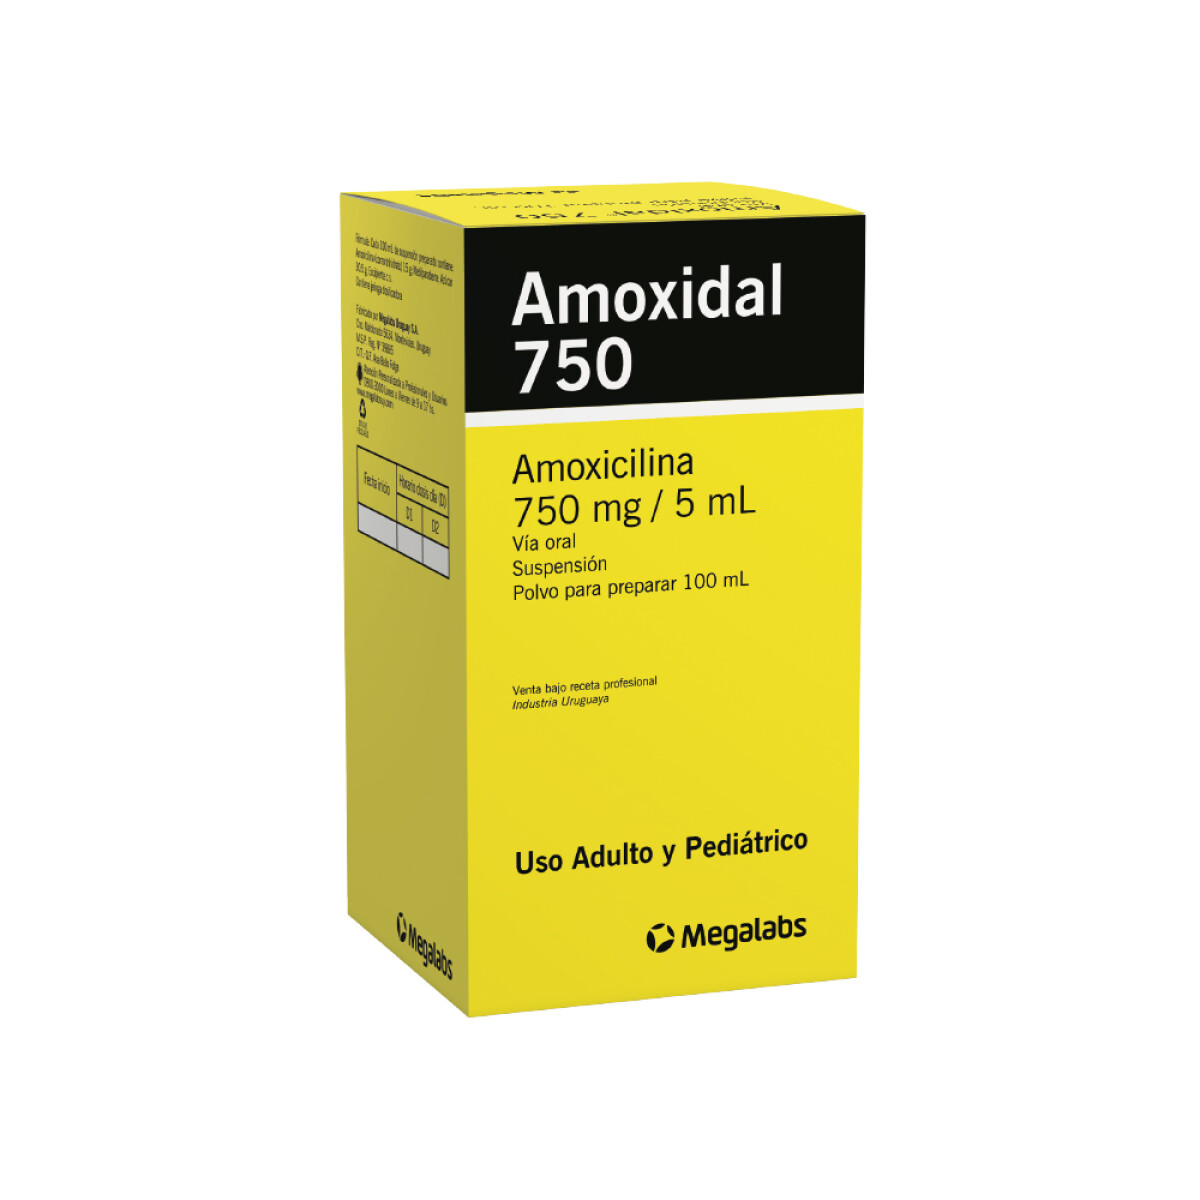 AMOXIDAL 750 MG SUSP 100 ML 